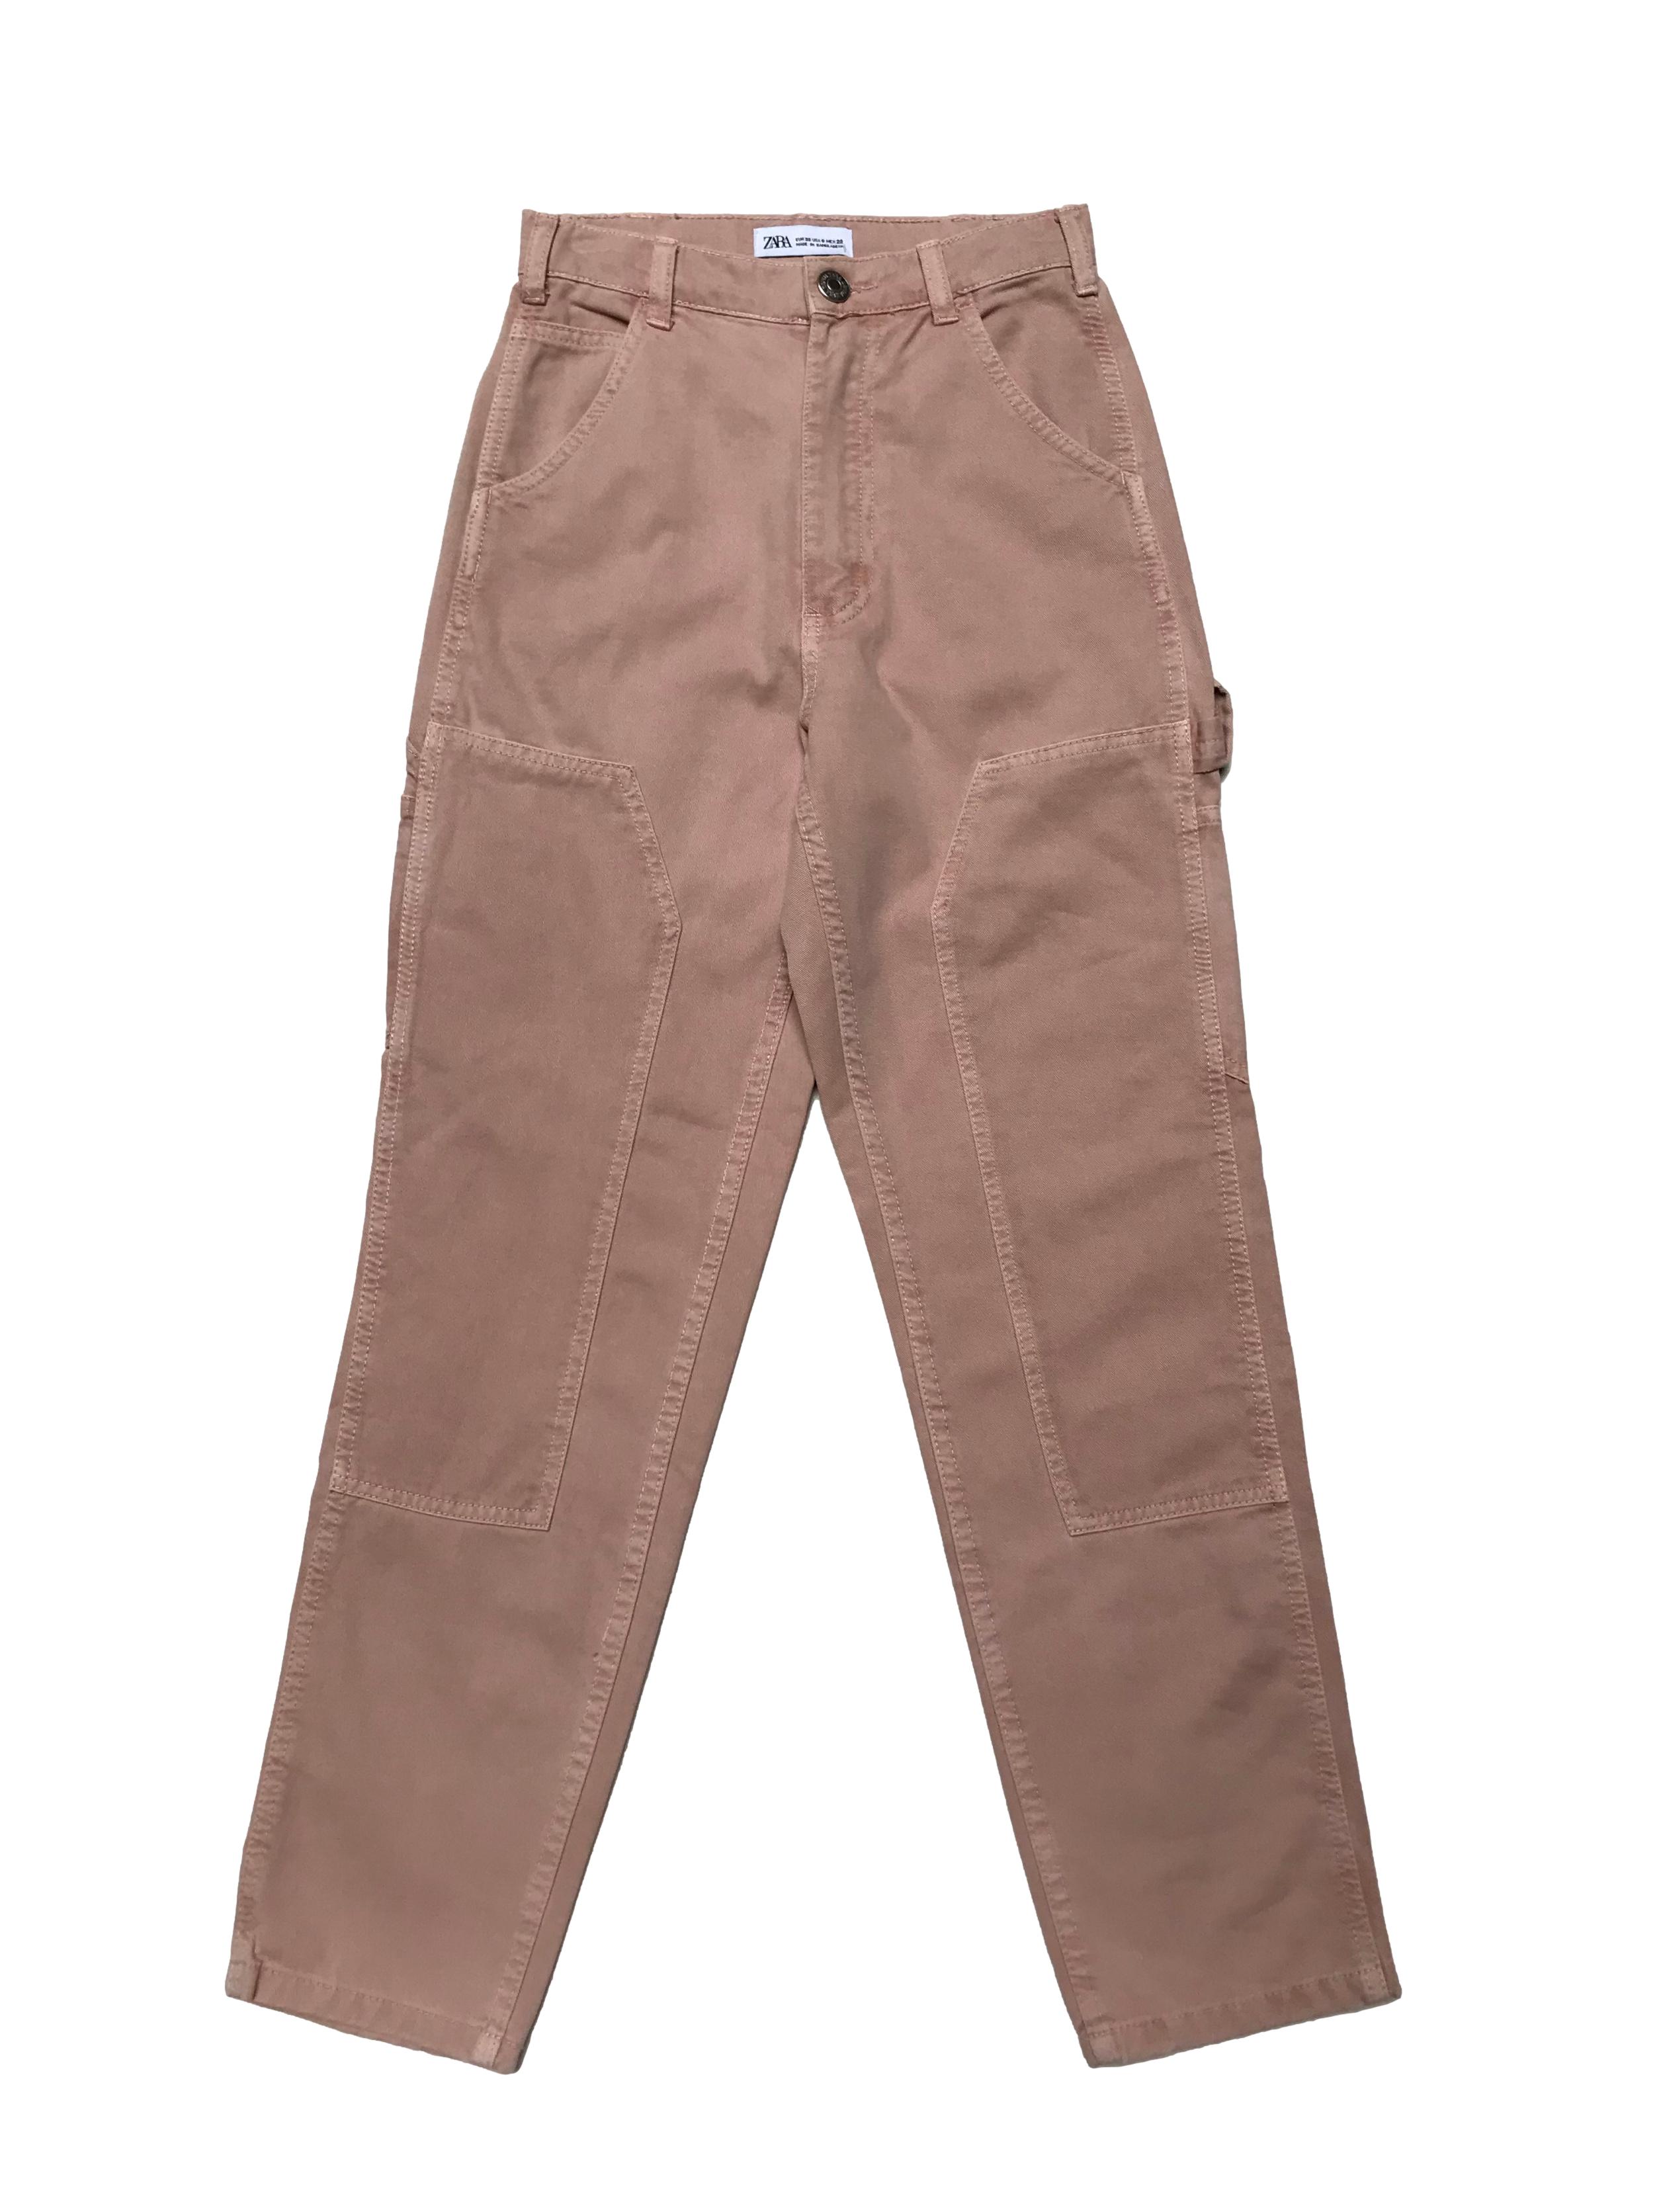 Jean Zara palo rosa efecto lavado, modelo carpenter a la cintura y corte mom, 100% algodòn. Cintura 60cm Largo 95cm